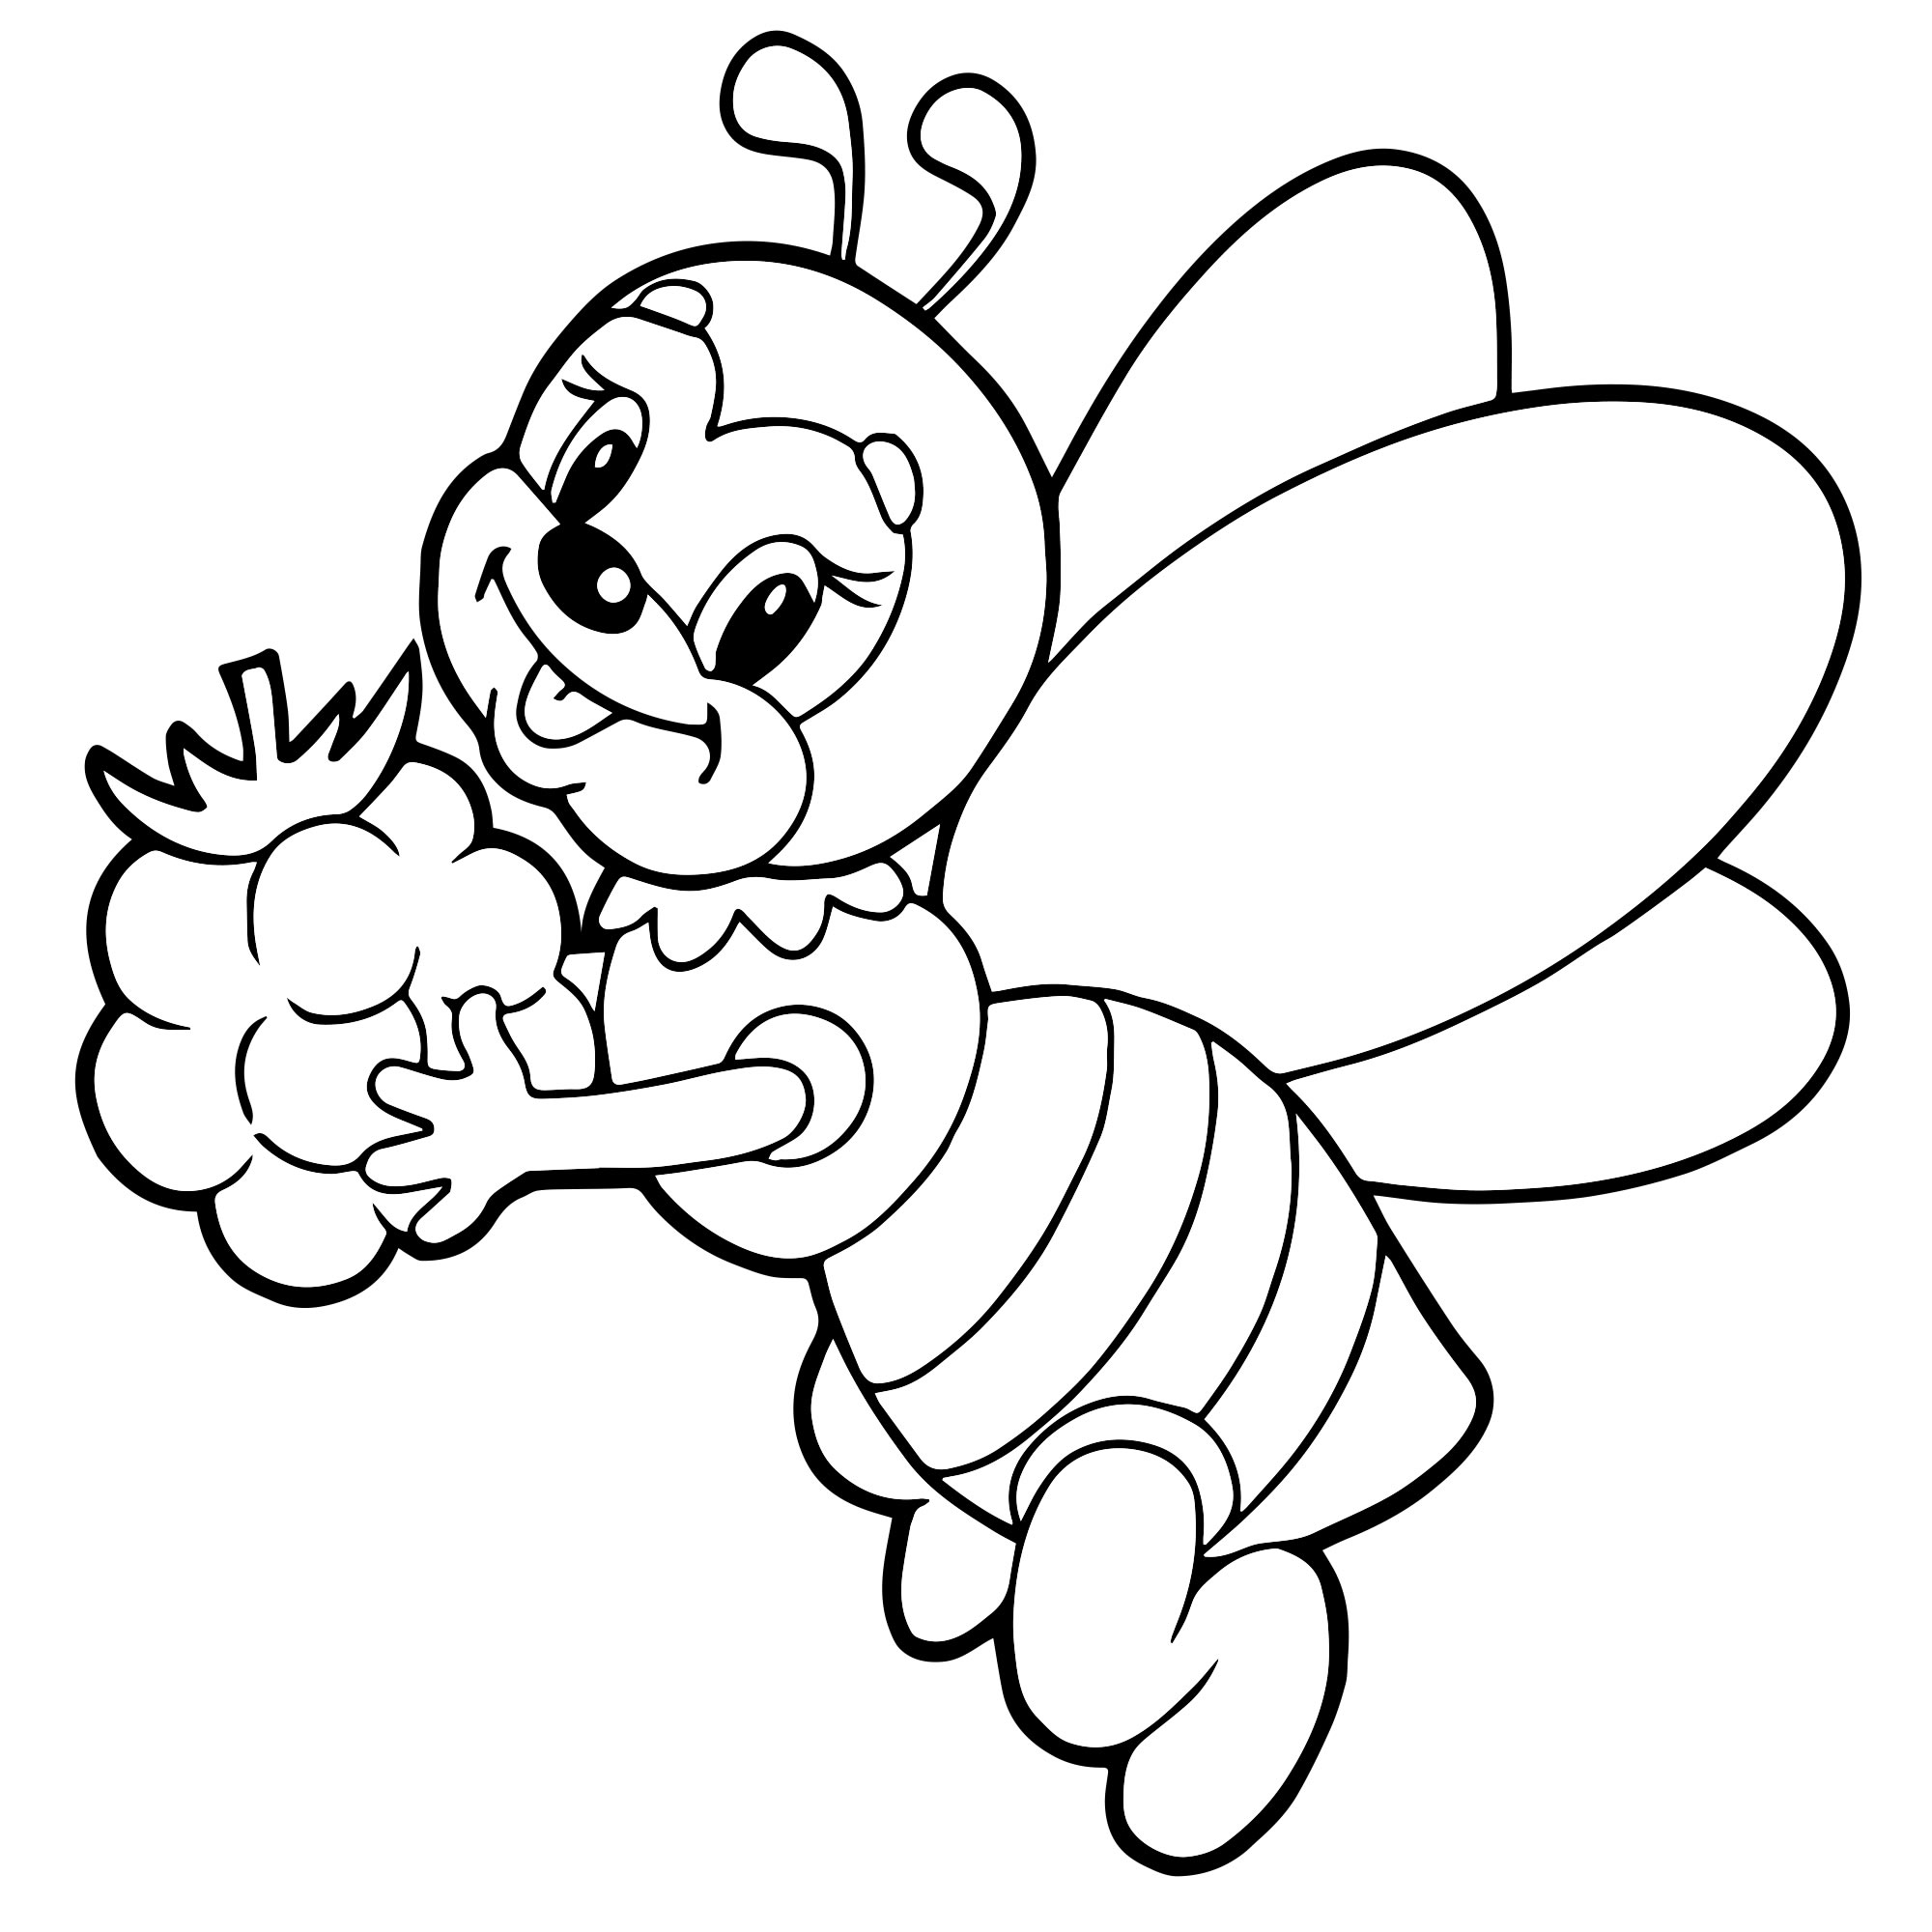 Раскраска картинка пчелки для детей распечатать